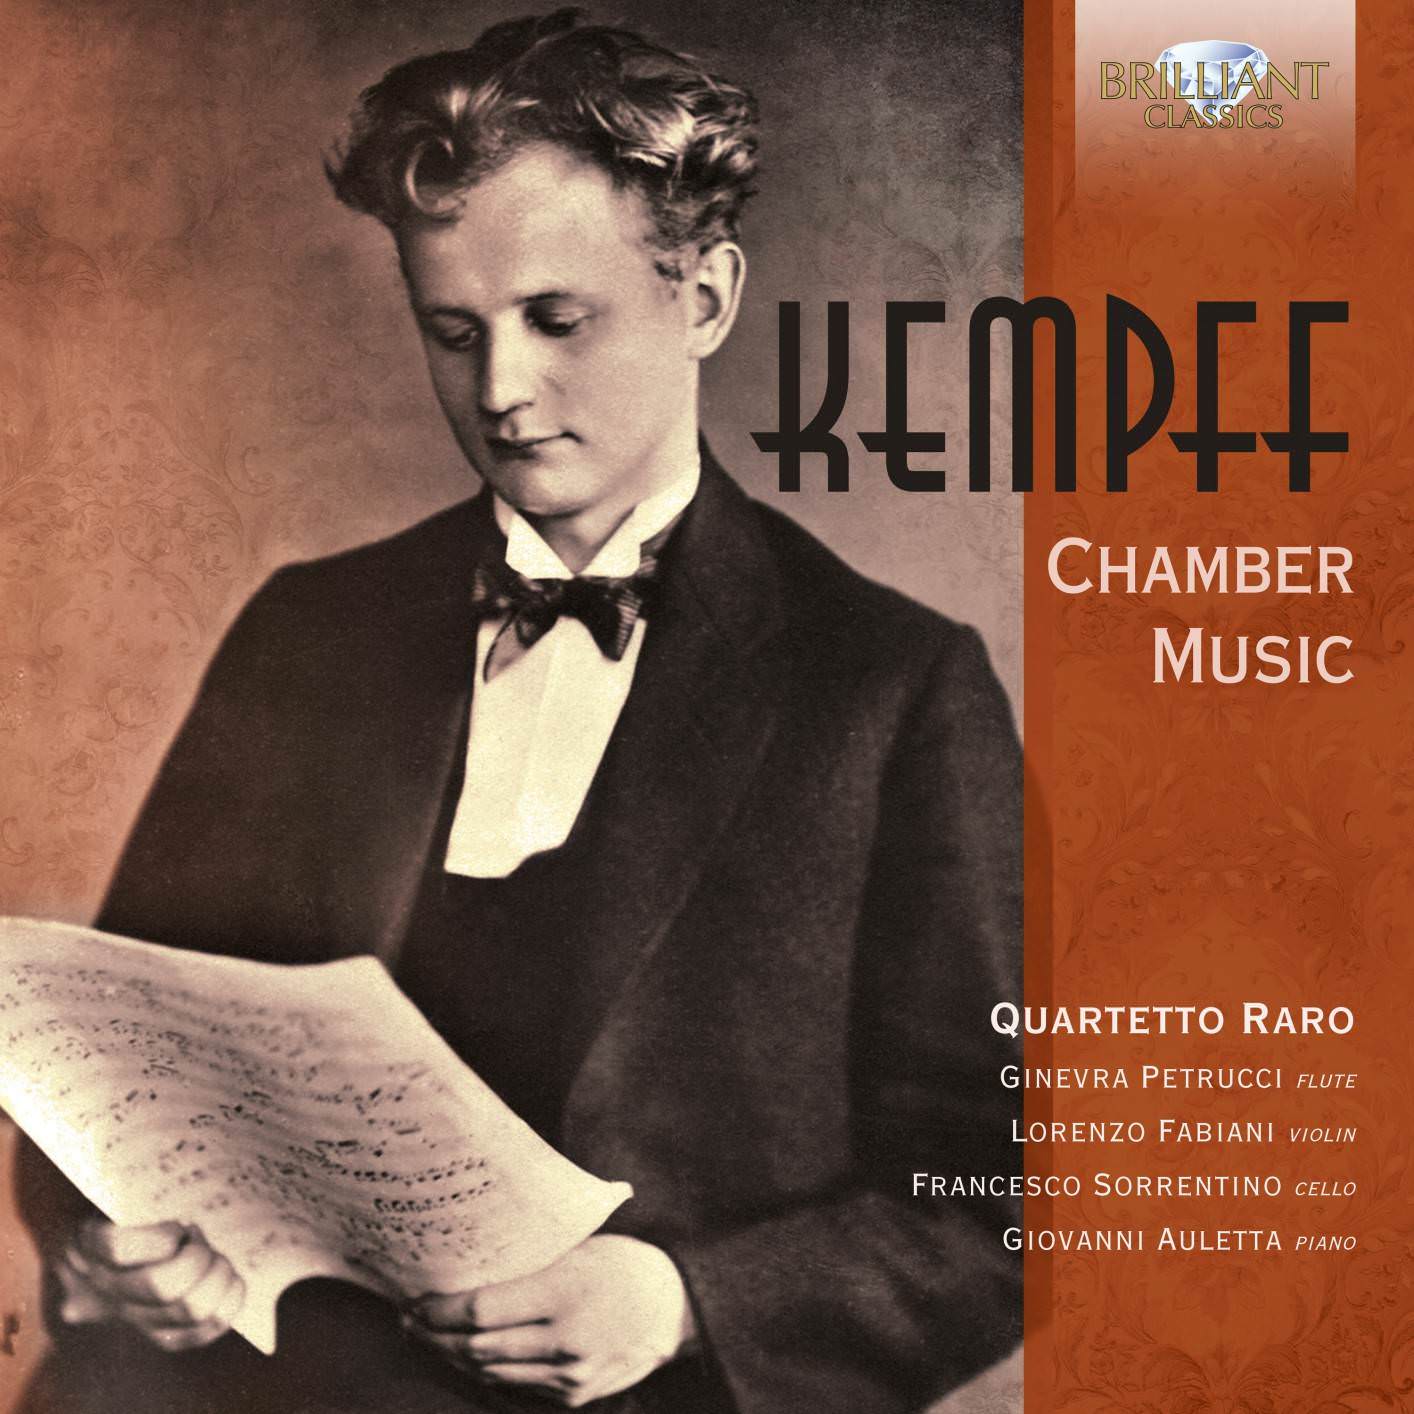 Quartetto Raro - Kempff: Chamber Music (2018) [FLAC 24bit/44,1kHz]